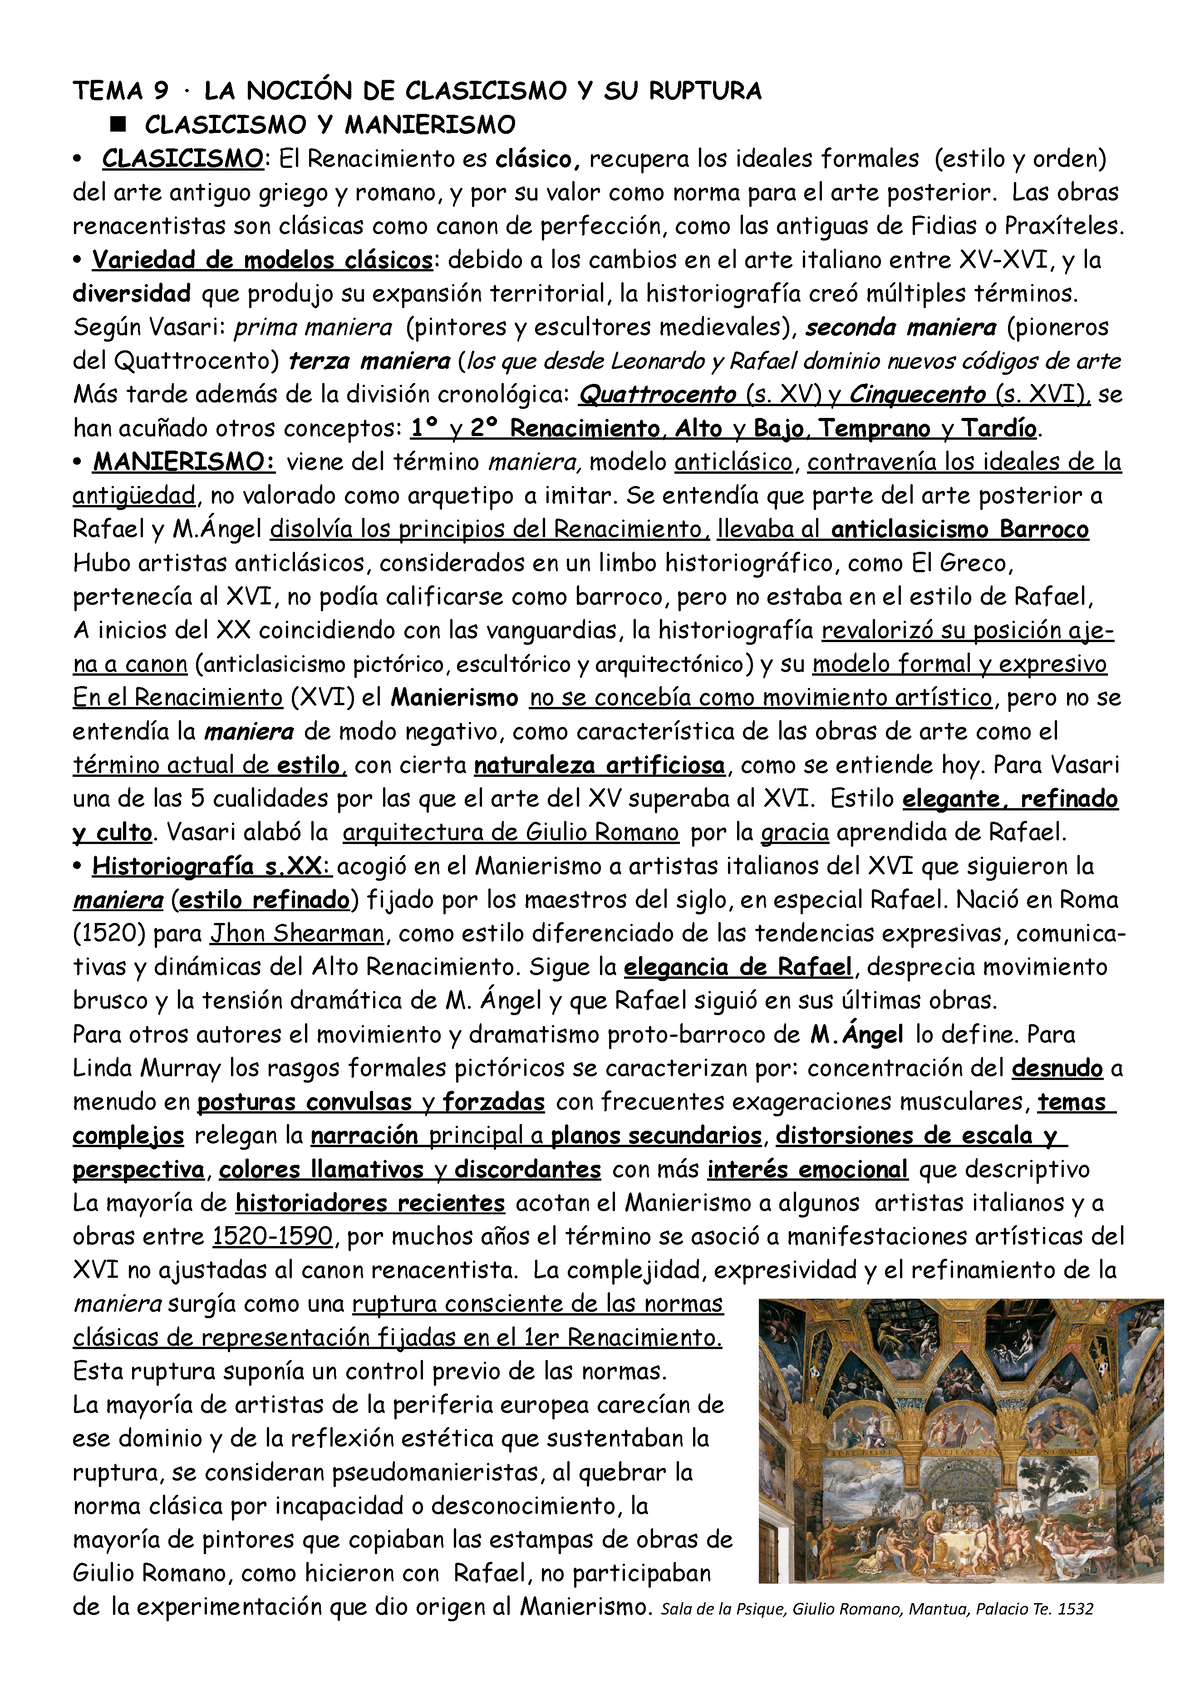 Giulio Romano Caída de los gigantes, 1532: Descripción de la obra